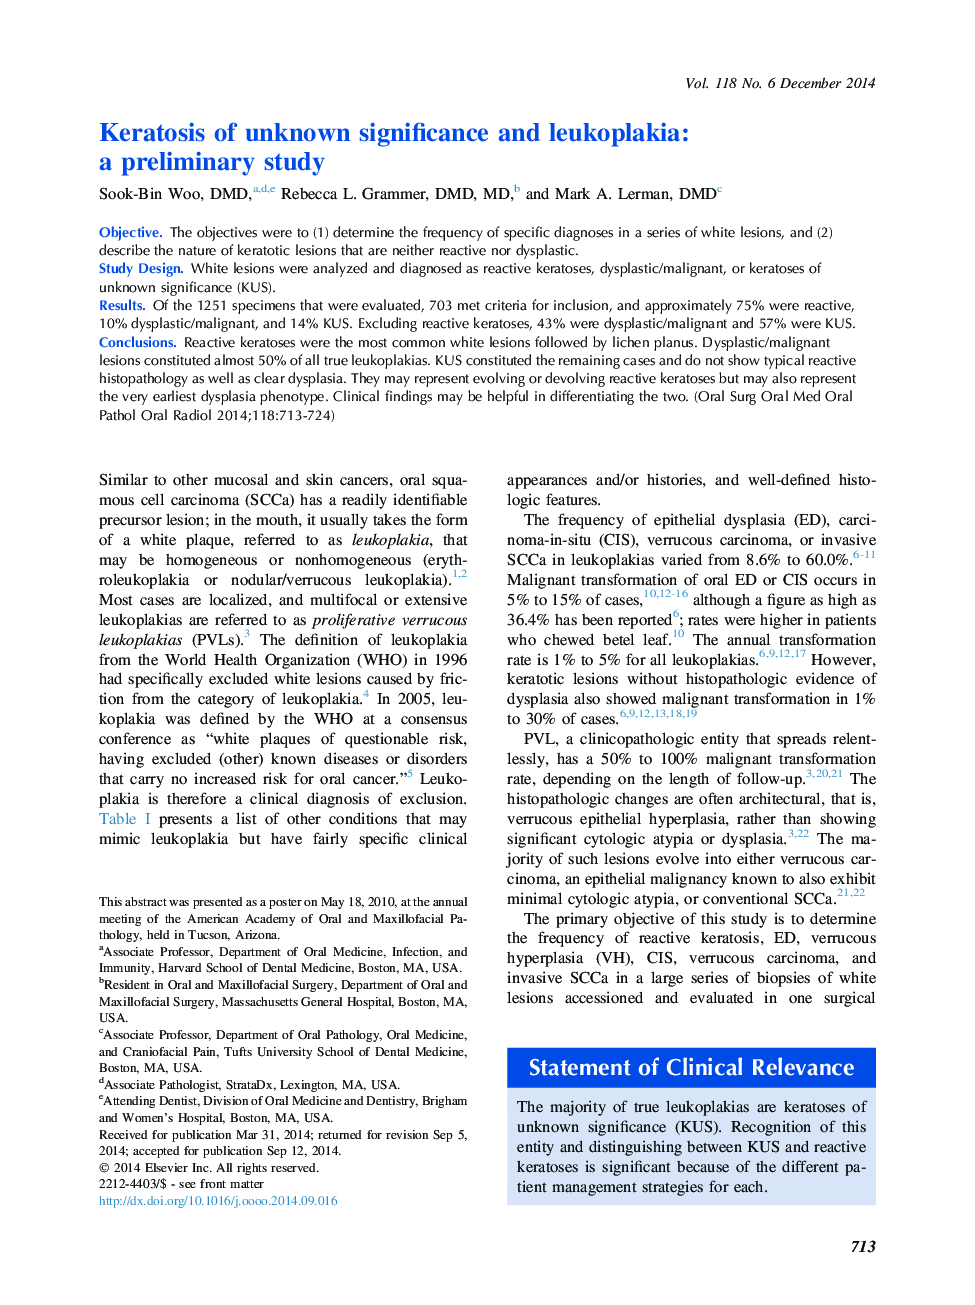 کراتوز با اهمیت ناشناخته و لکوپالاکیا: یک مطالعه اولیه 